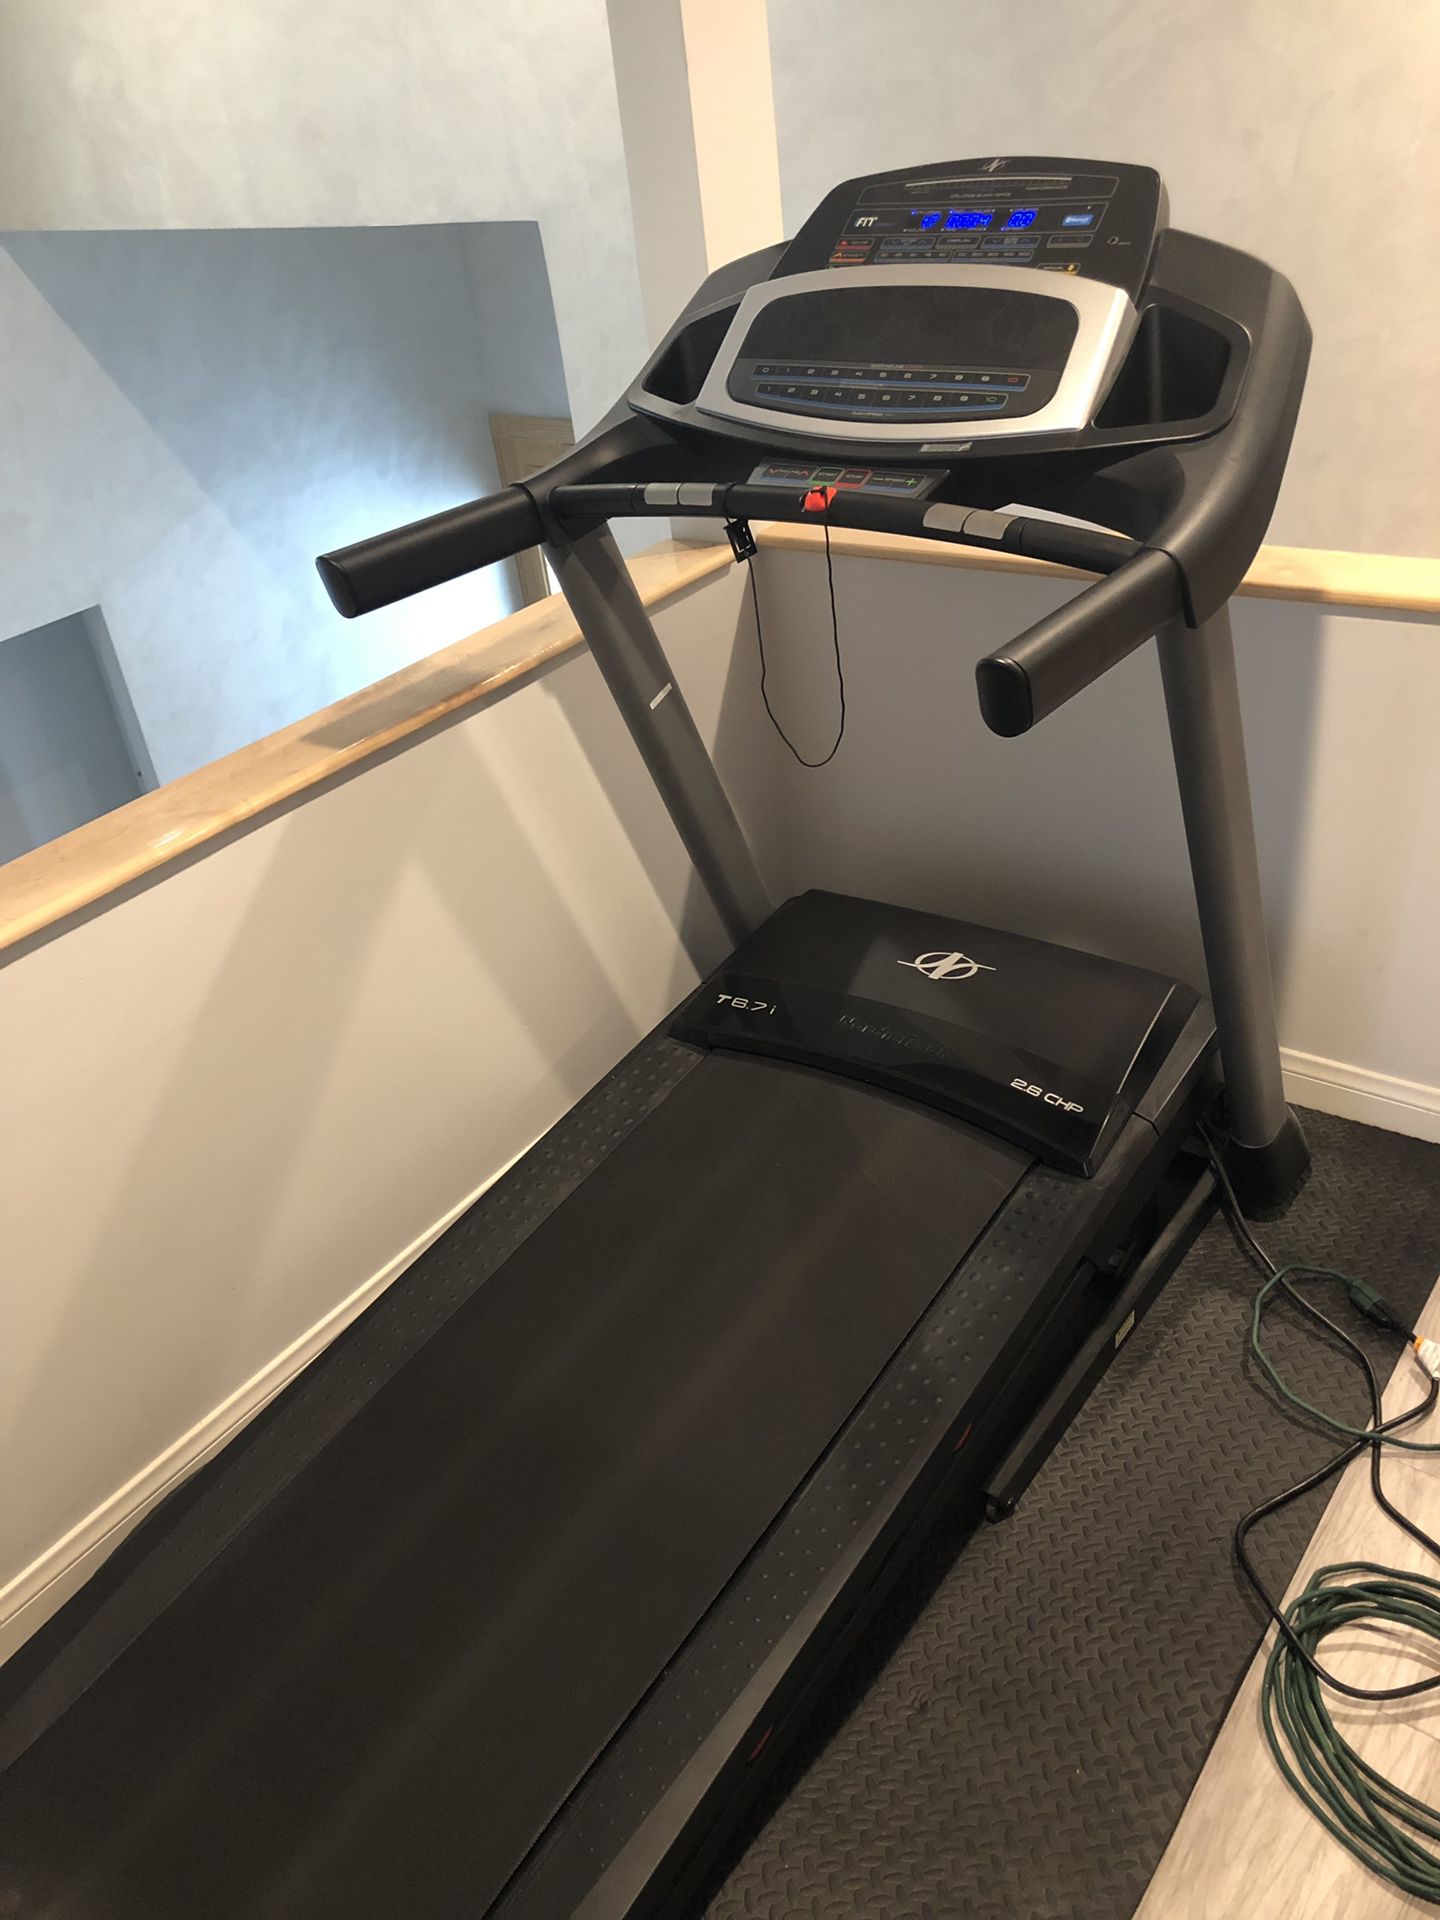 NordicTrack treadmill T6.7i